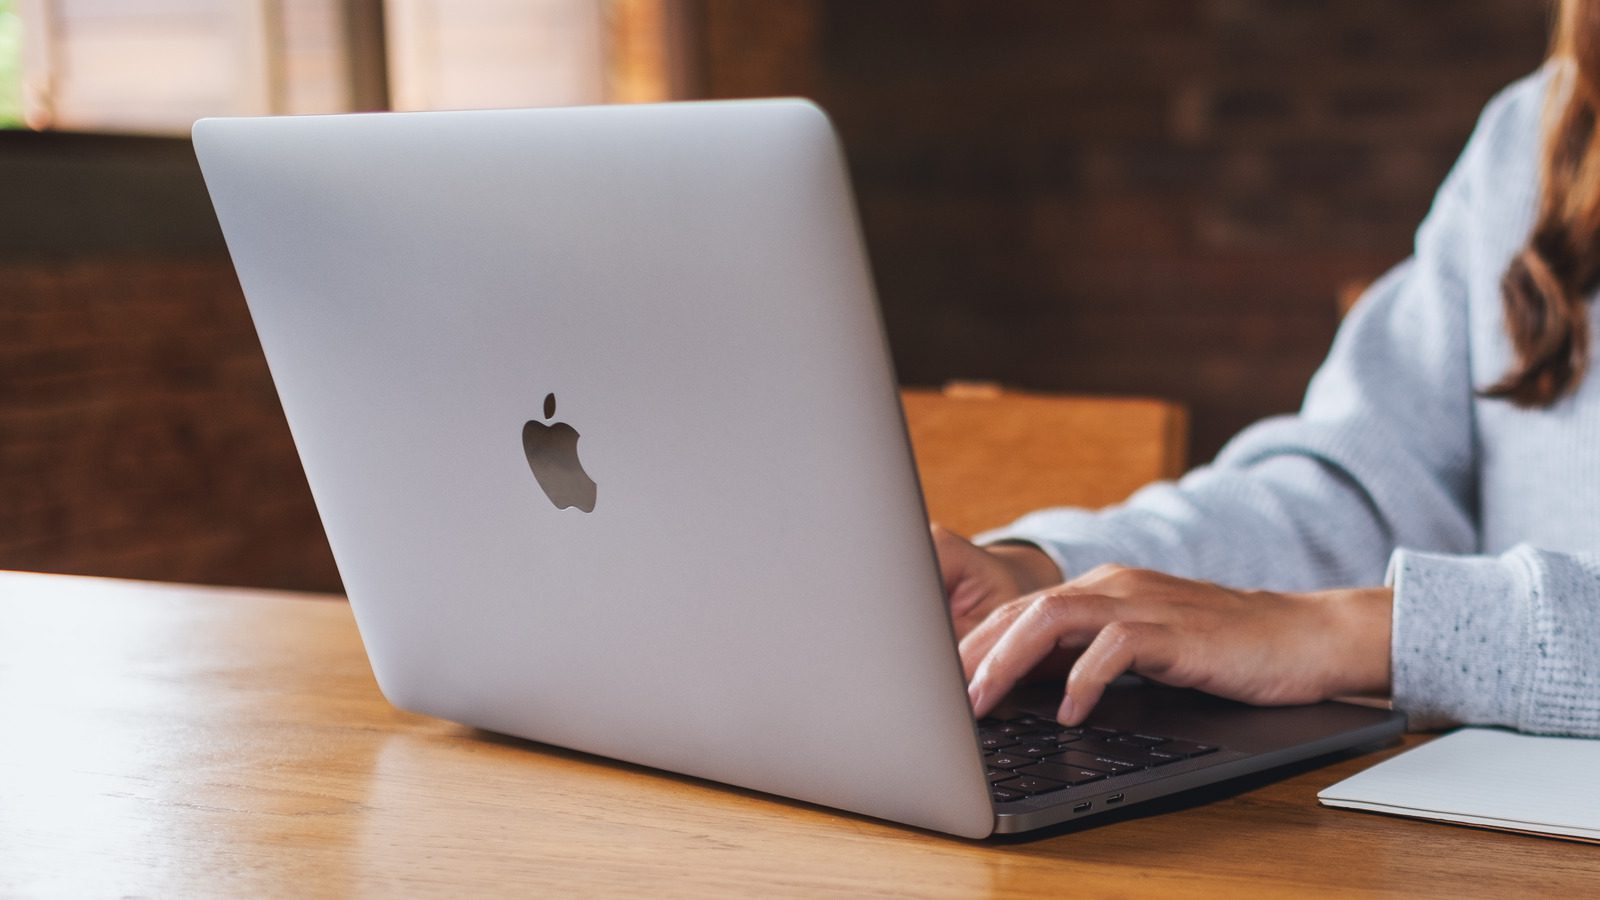 Daha Üretken Olmak İçin Kullanabileceğiniz 5 MacBook Özelliği ve İpuçları